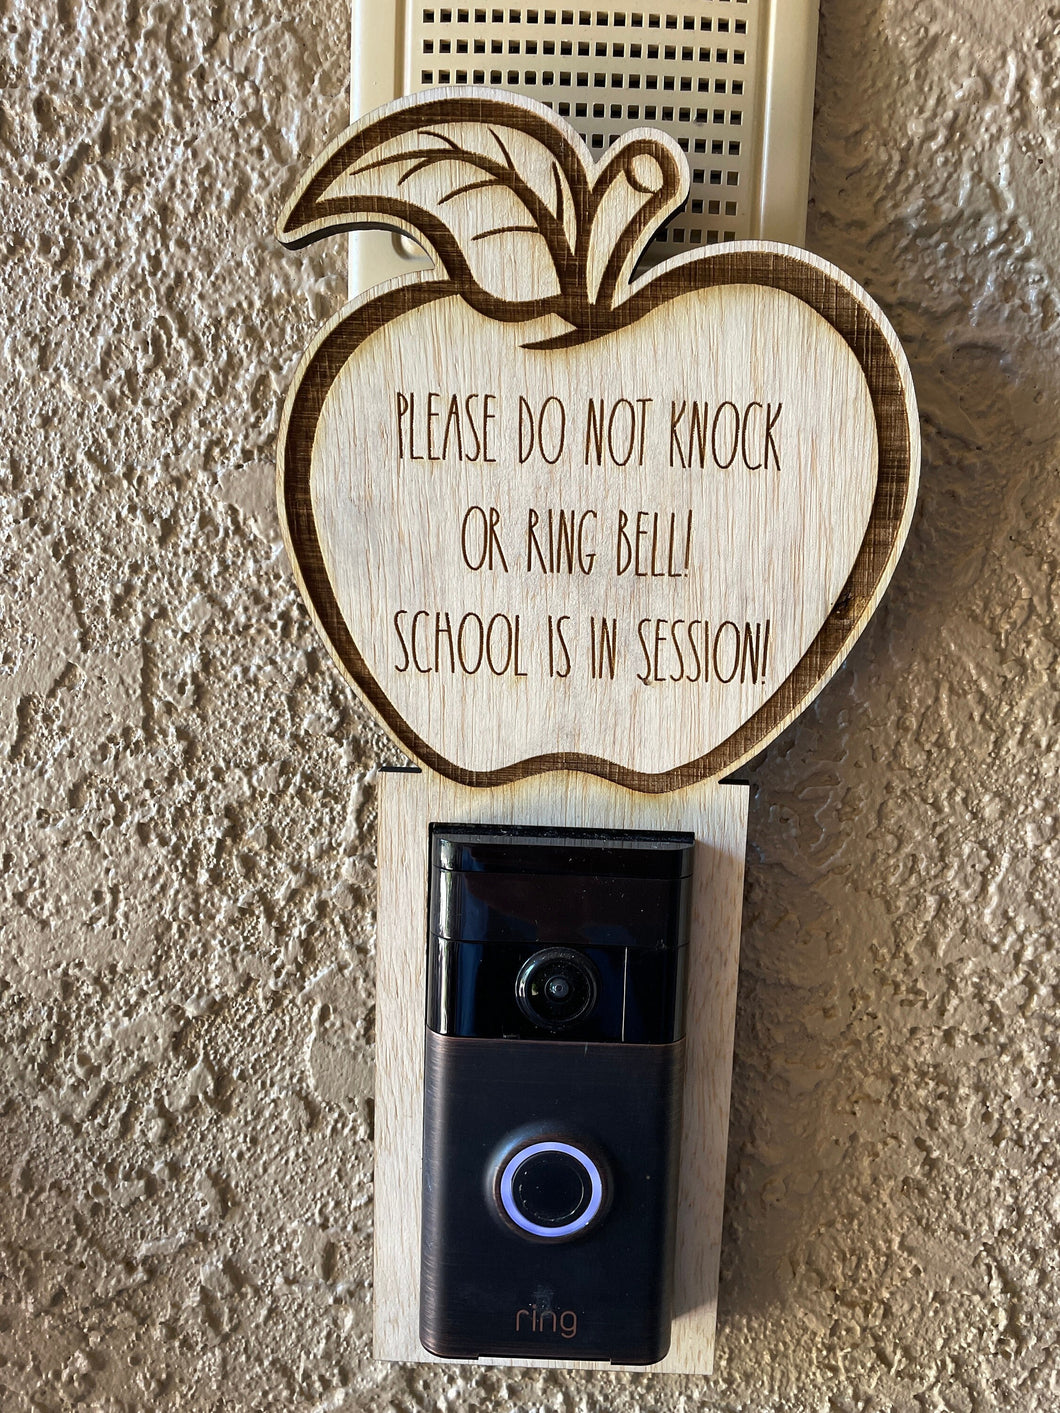 School in Session Doorbell Sign, Doorbell, Doorbell Sign, Ring, Nest, Arlo, Homeschool, Do not Ring, Door Hanger, Front Door Sign, Wood Sign